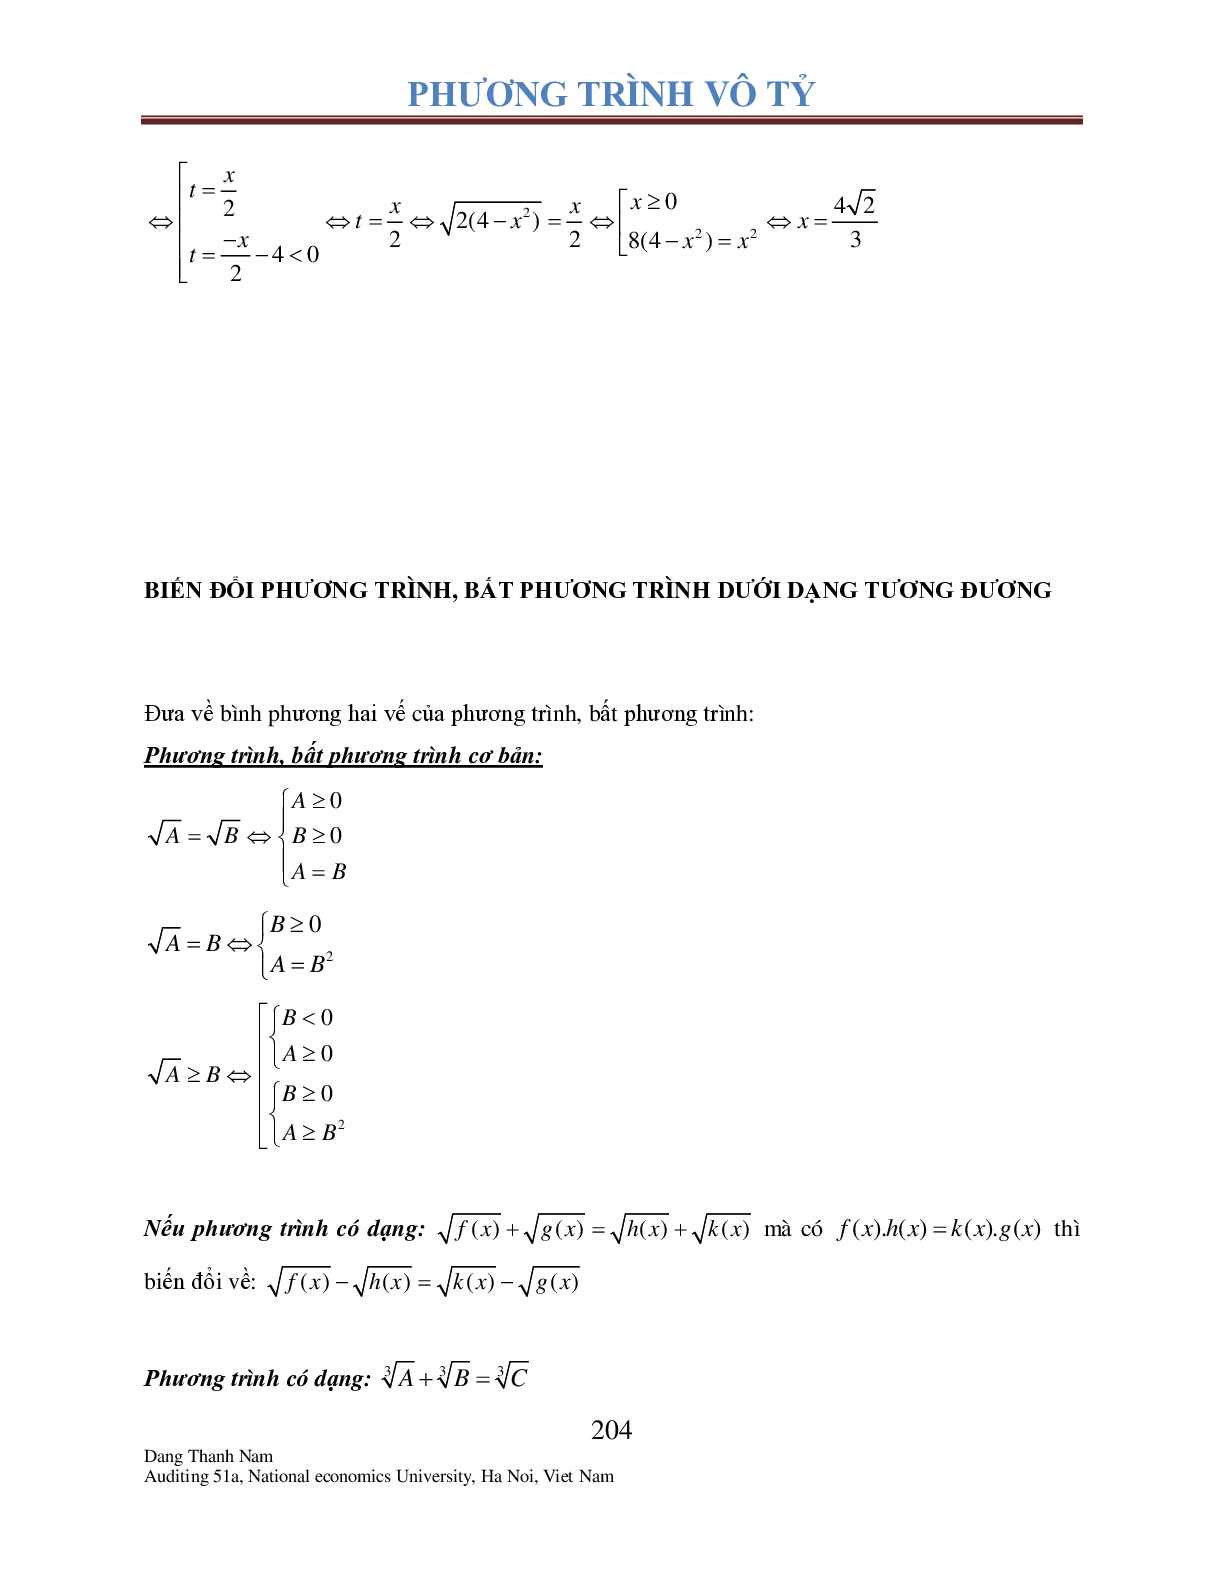 Chuyên đề phương trình Vô tỉ (trang 9)